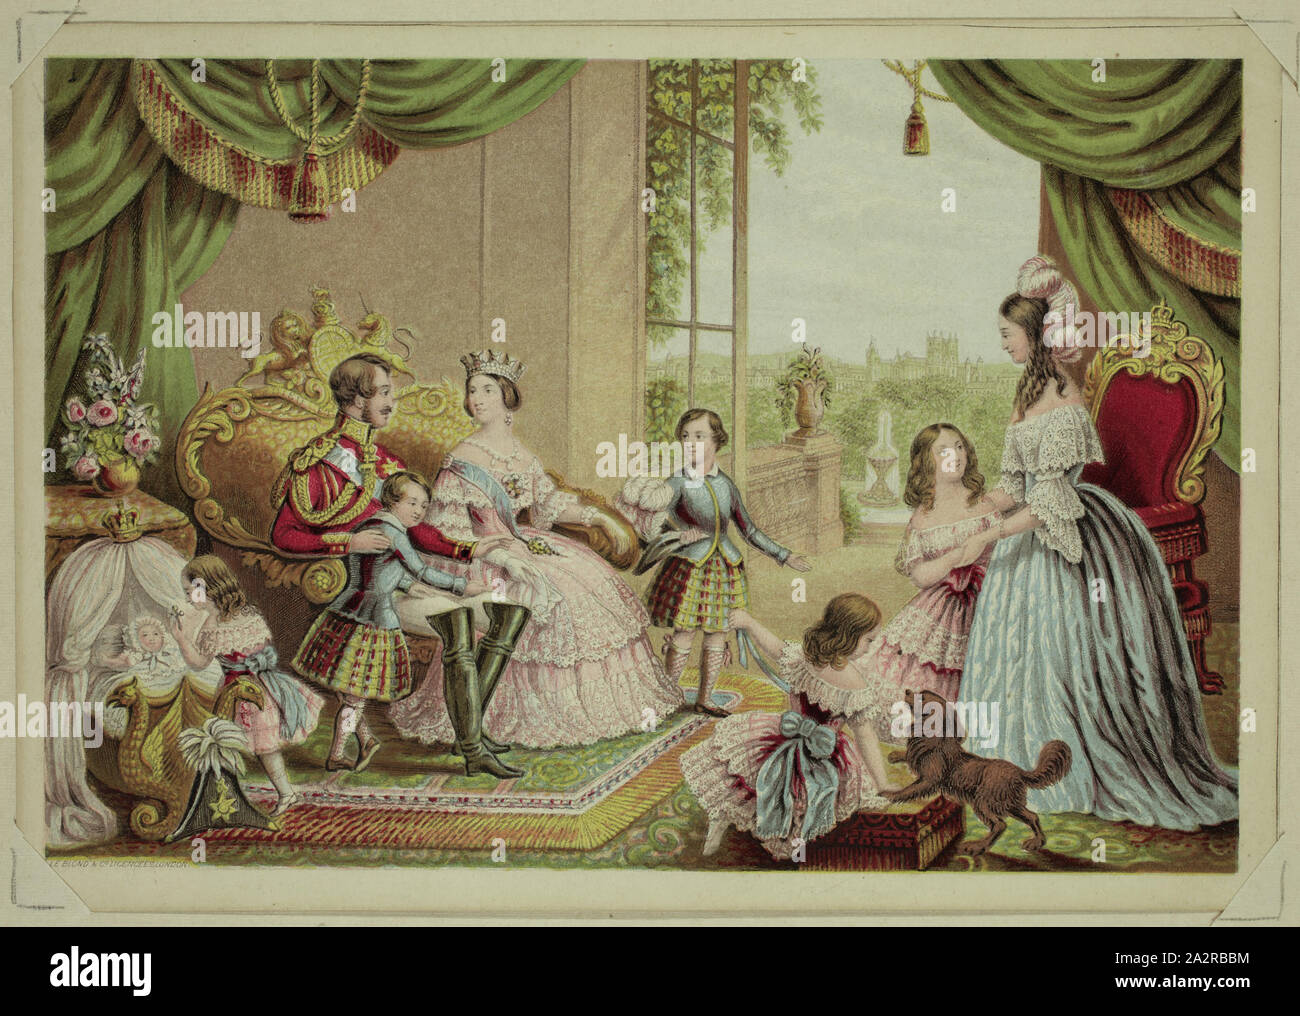 Sconosciuto (inglese), Queen Victoria, il Principe Consorte e la famiglia reale a Buckingham Palace, c. 1845, a intaglio e sollievo stampato a colori (Baxter processo), immagine: 4 x 5 7/8 in Foto Stock